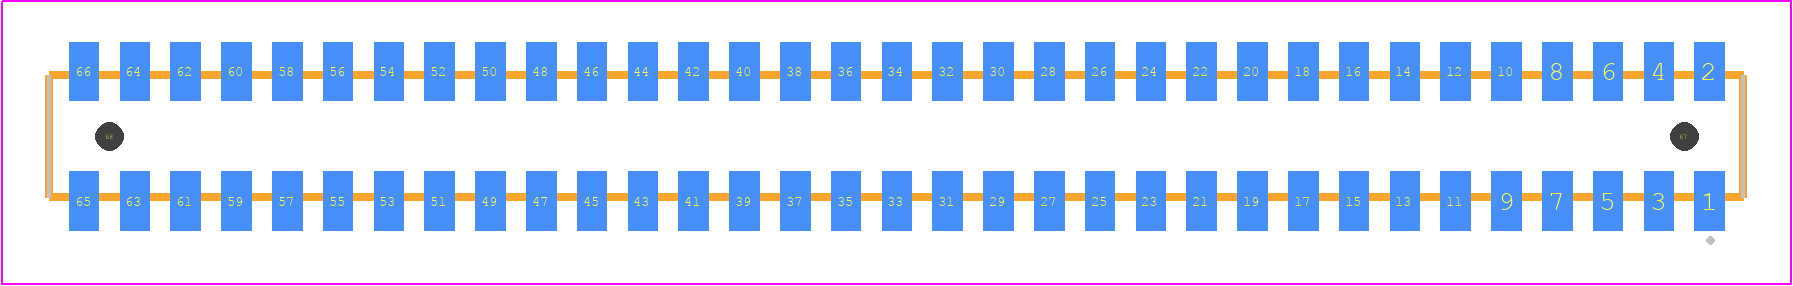 CLP-133-02-G-D-A - SAMTEC PCB footprint - Other - Other - CLP-133-02-XXX-D-A